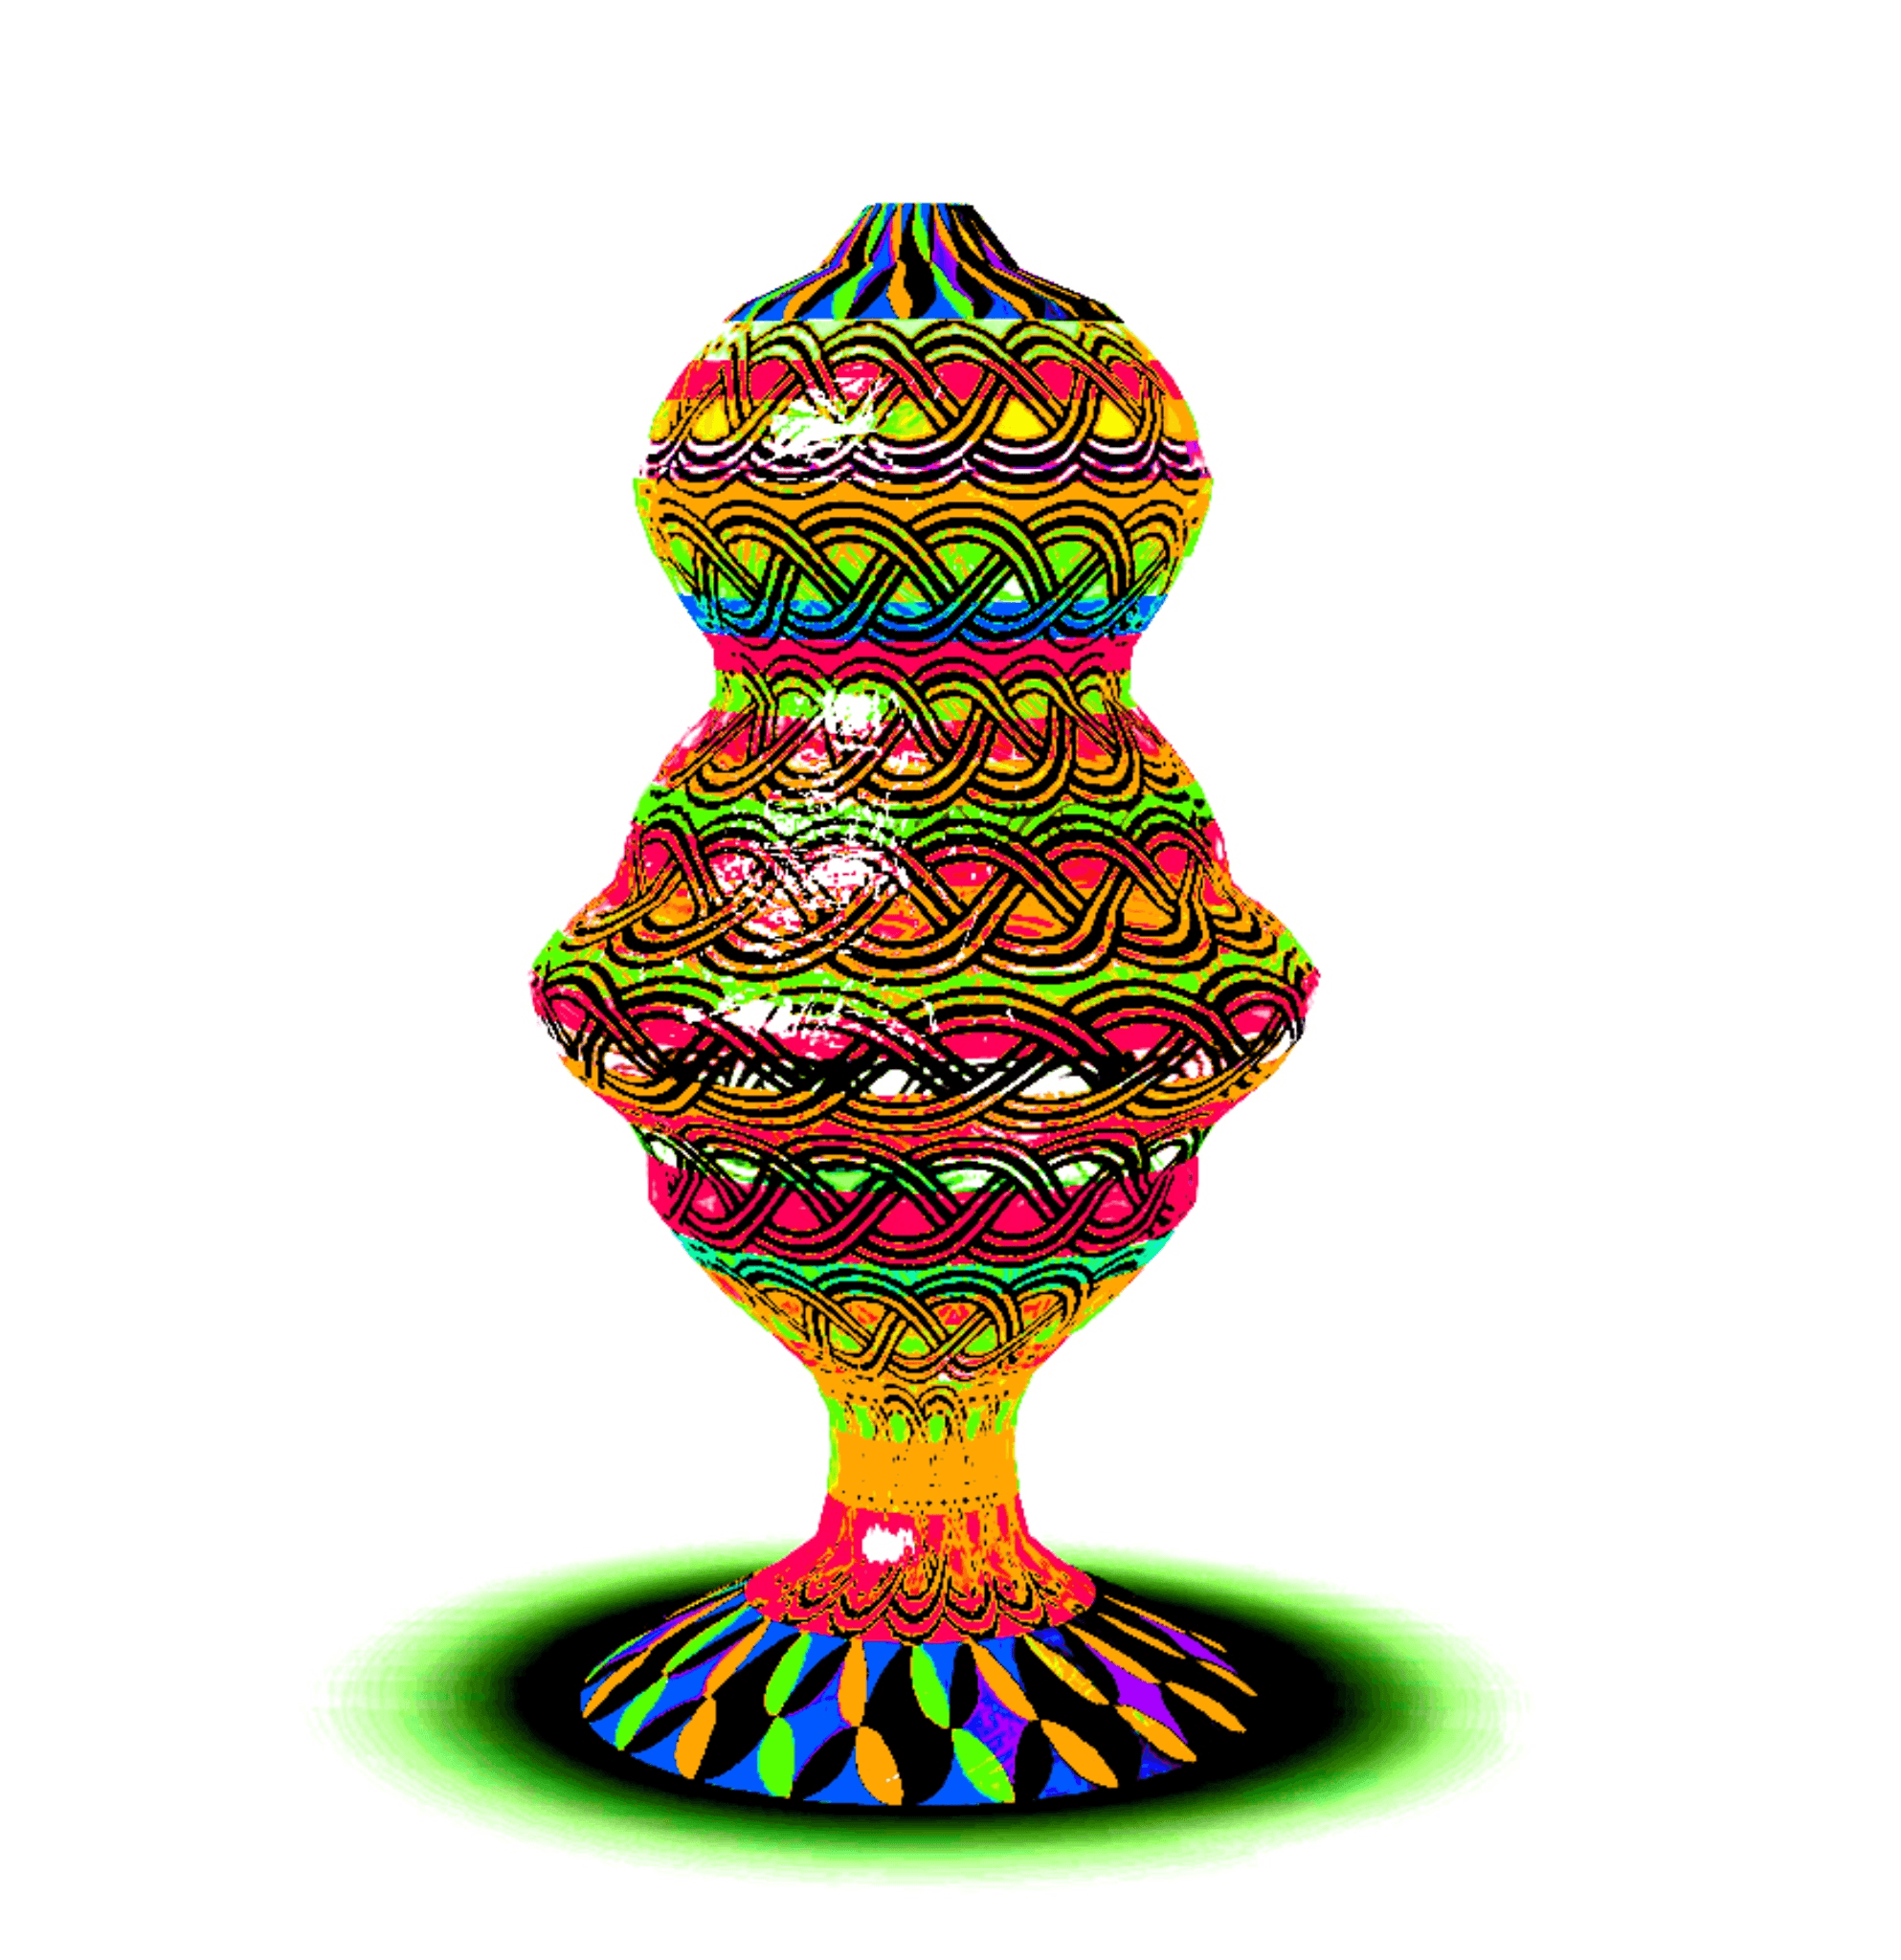 brite alien vase